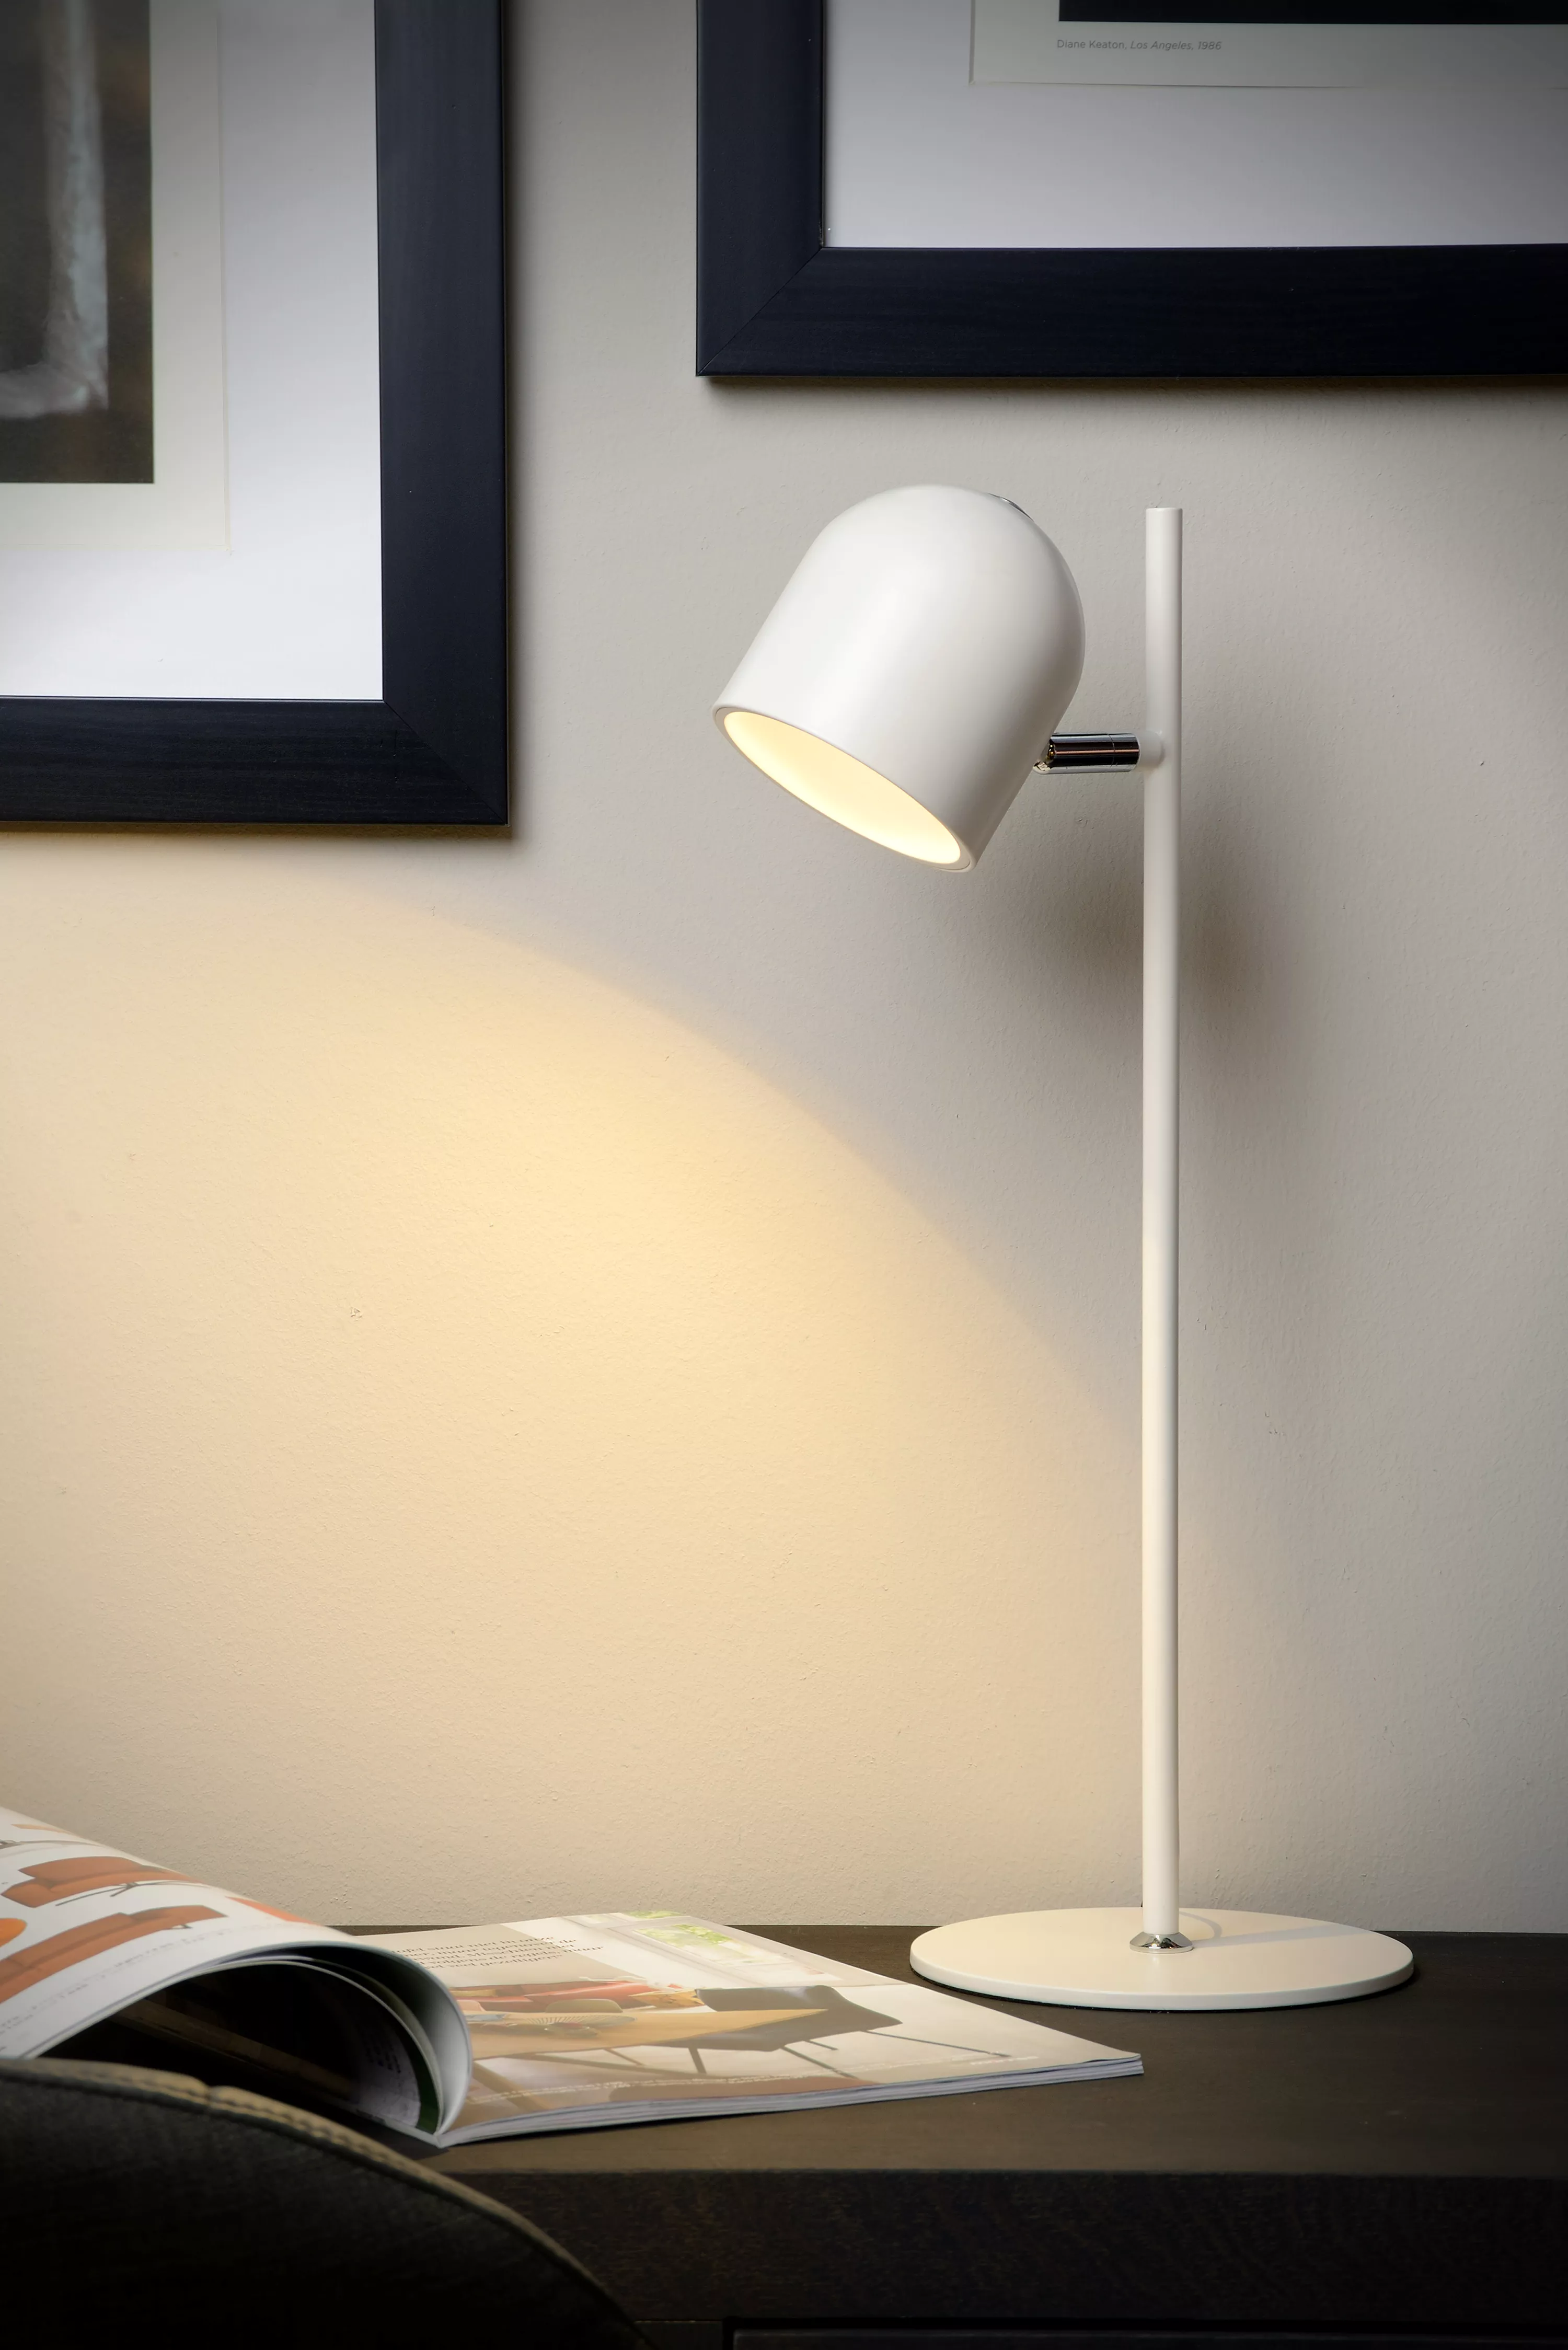 Elegantní stolní lampička Skanska s otočnou hlavou a stmívatelným zabudovatelným LED zdrojem.